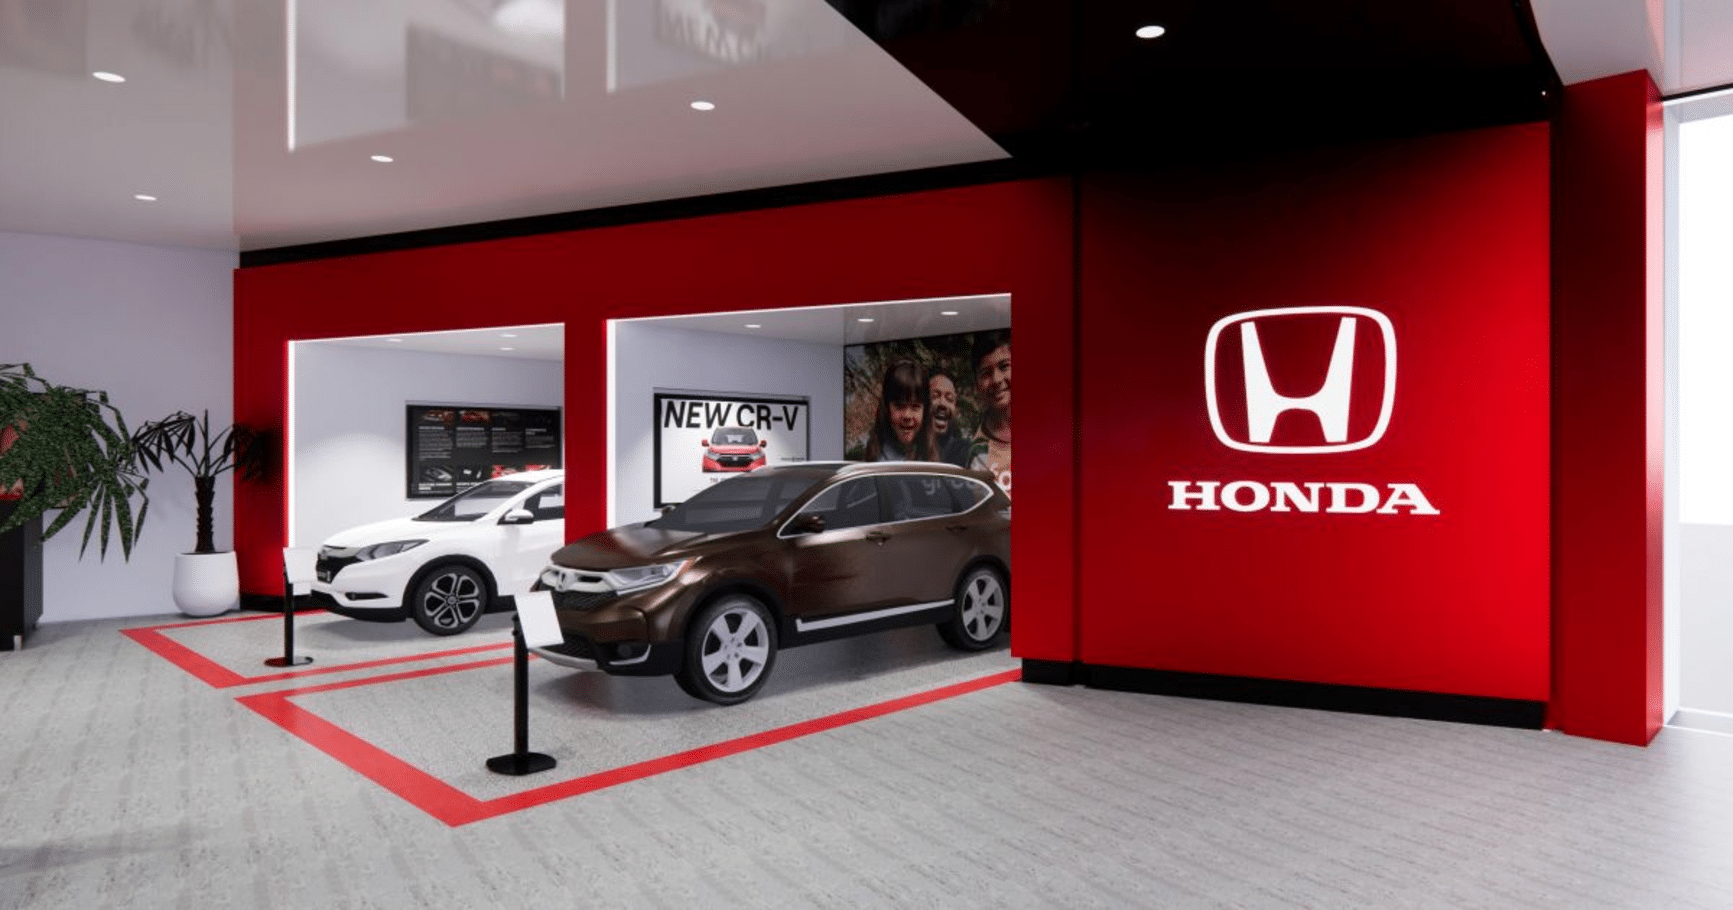 Honda Australia Faces Potential $10 Million Damages in Dealer Lawsuit